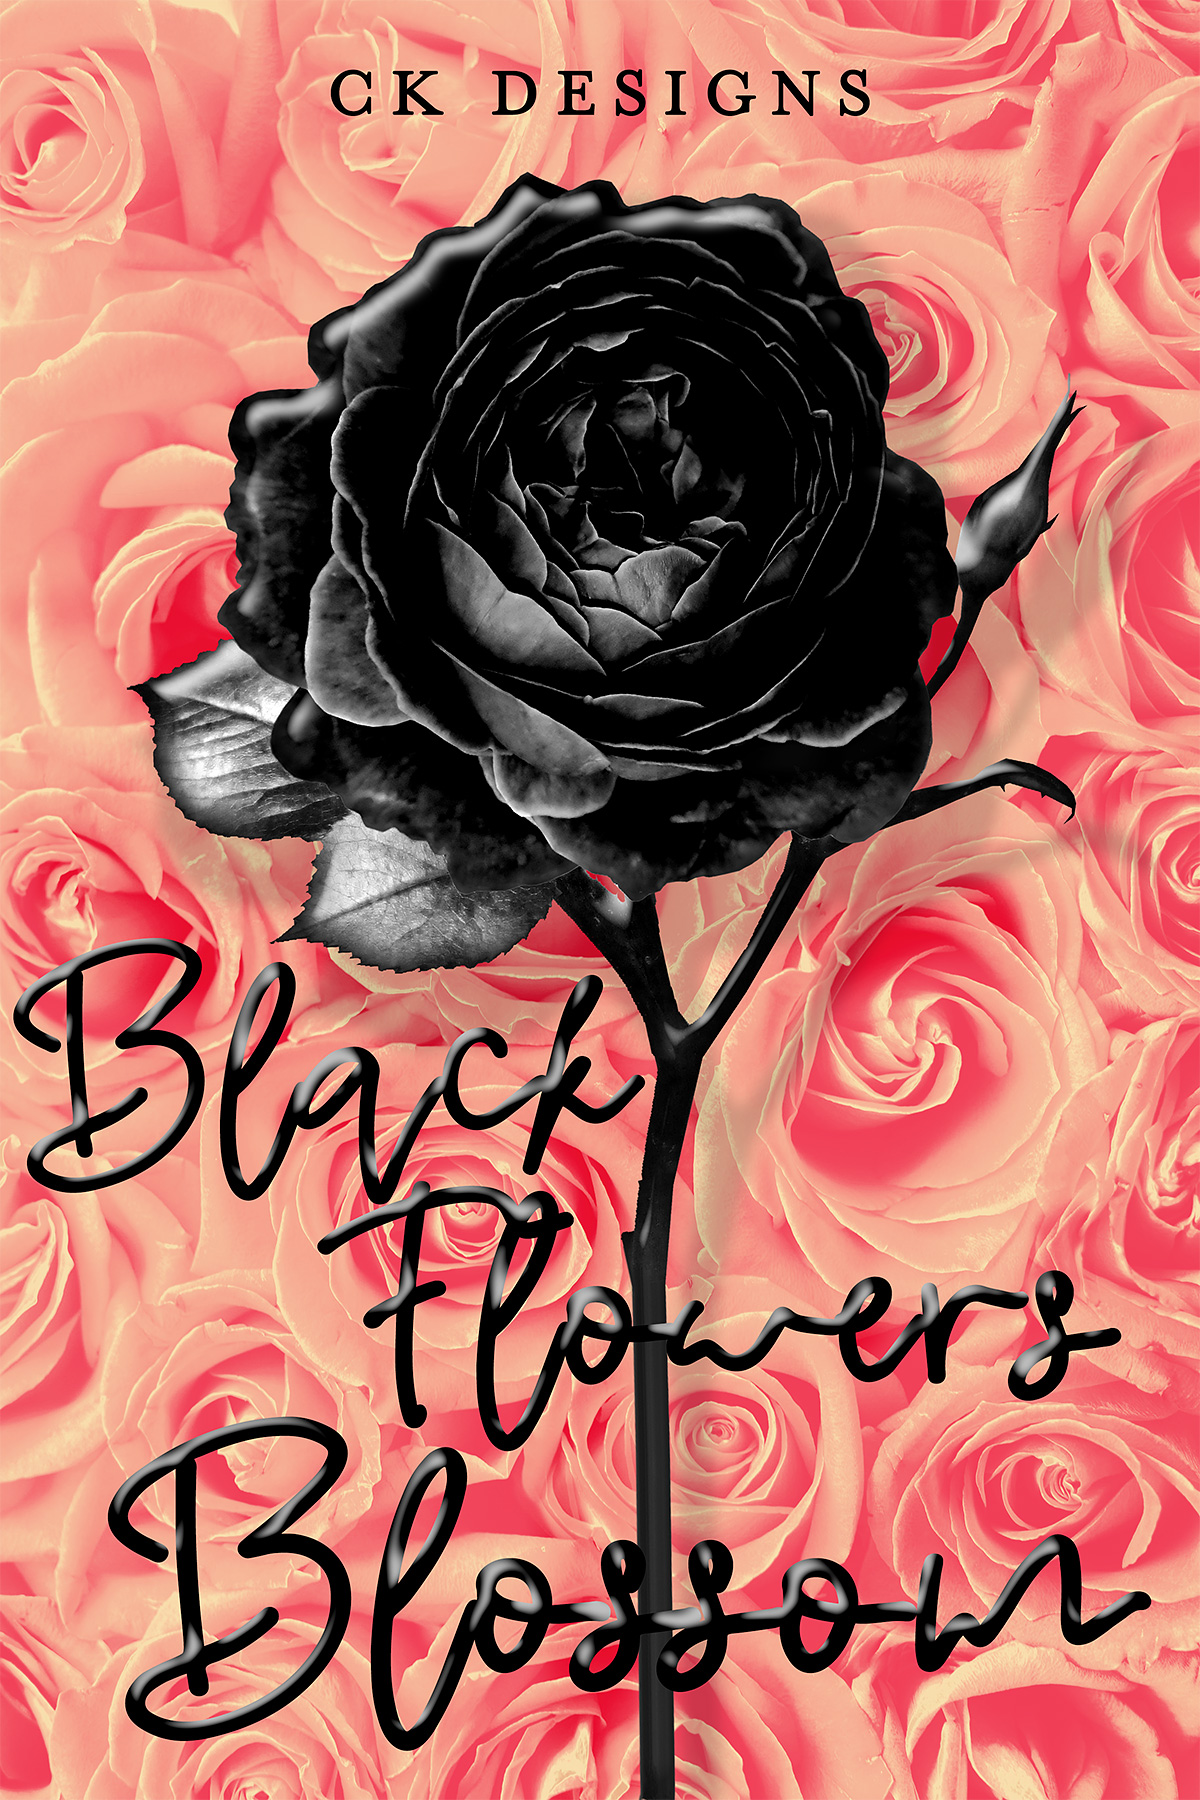 Black Flowers Blossom - The Book Cover Designer